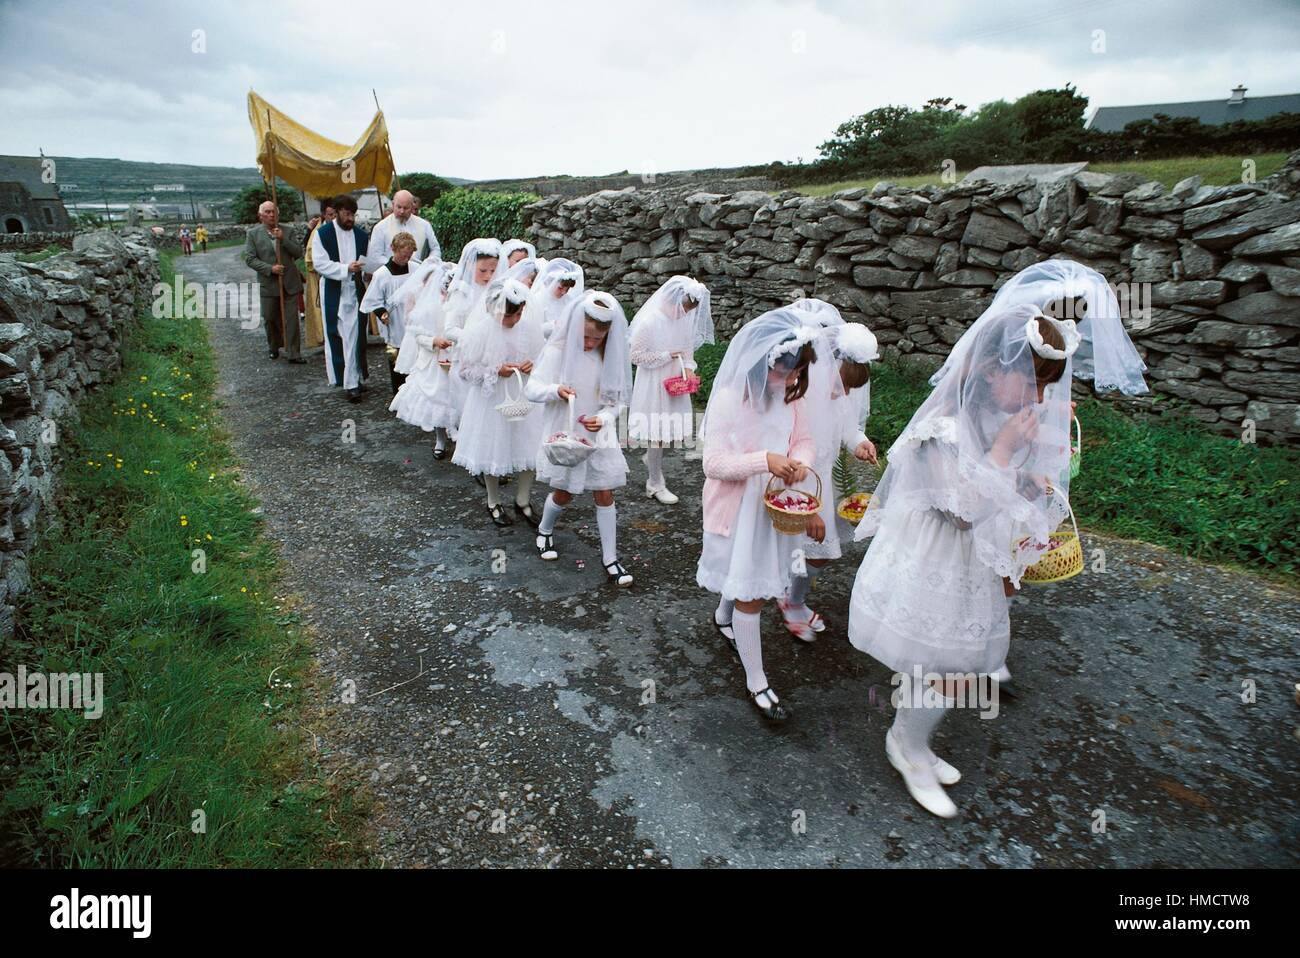 Mädchen, die erste Heilige Kommunion Kleider tragen, während der Fronleichnamsprozession, Inis Mor, Aran Islands, Irland. Stockfoto